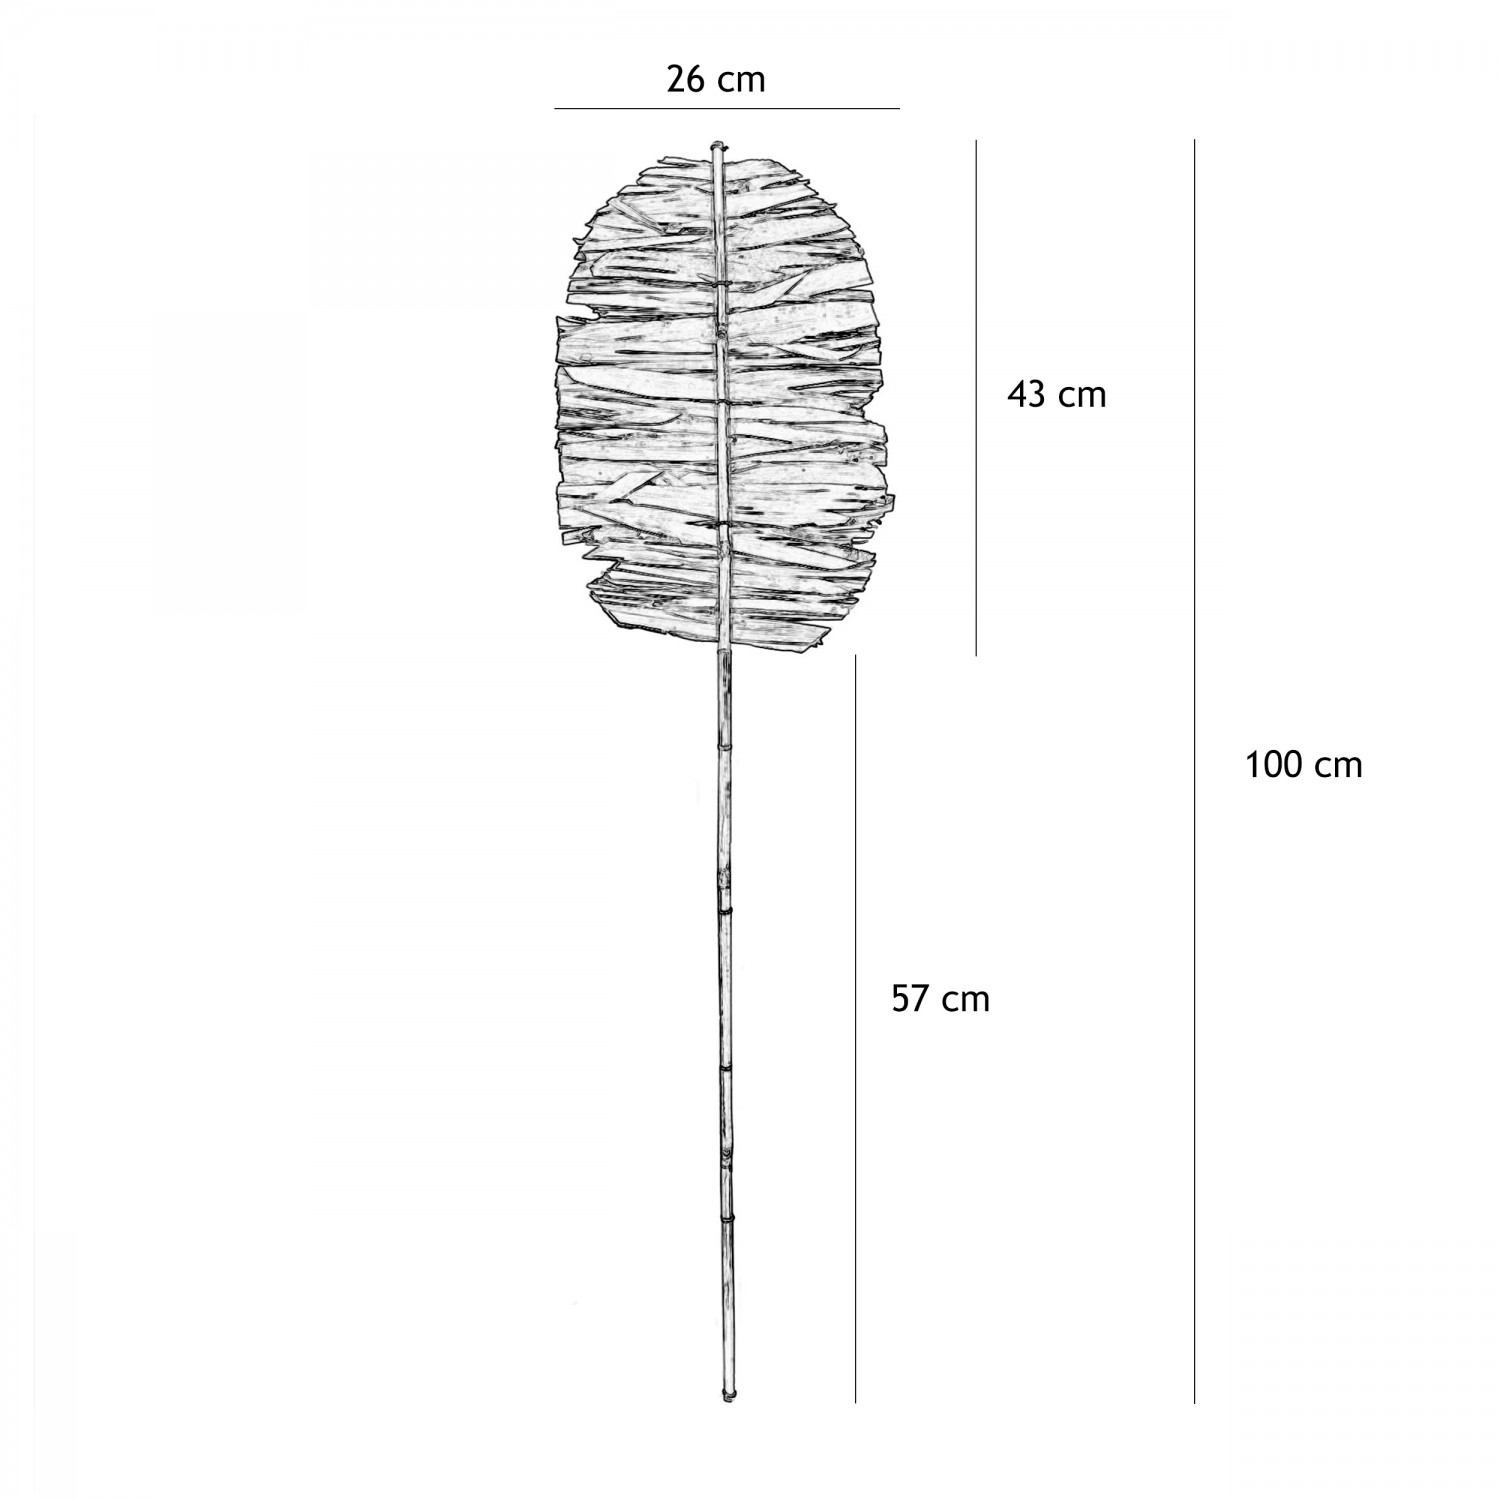 Feuille de palmier séchée indien 100cm graphique avec les dimensions